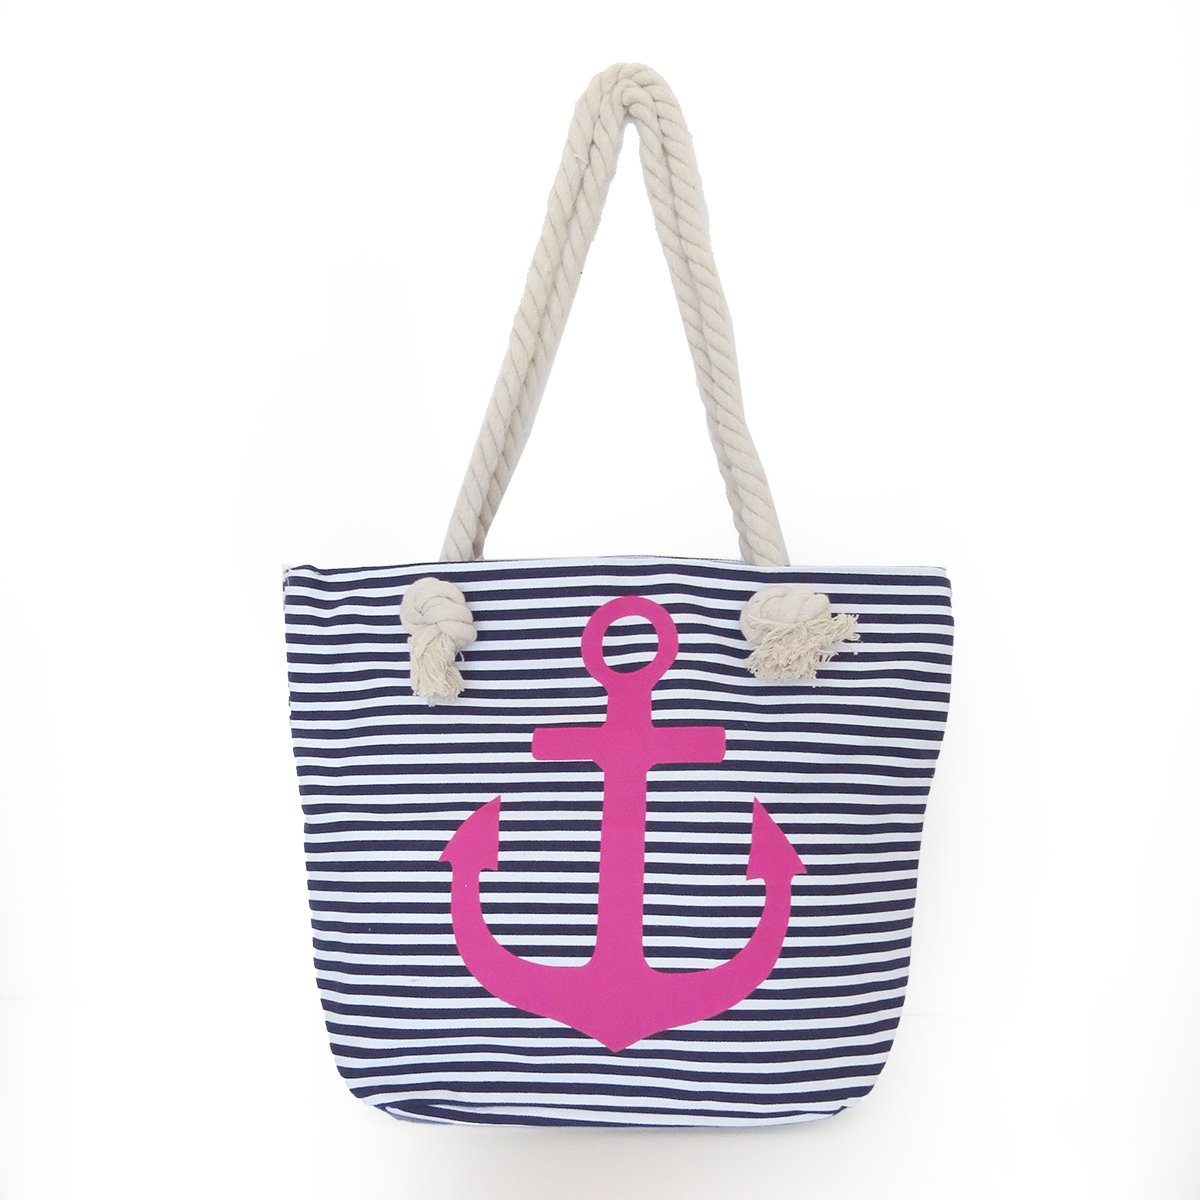 Sonia Originelli Umhängetasche Strandtasche mit Ankermotiv Beachbag Shopper Streifen Maritim marine-pink